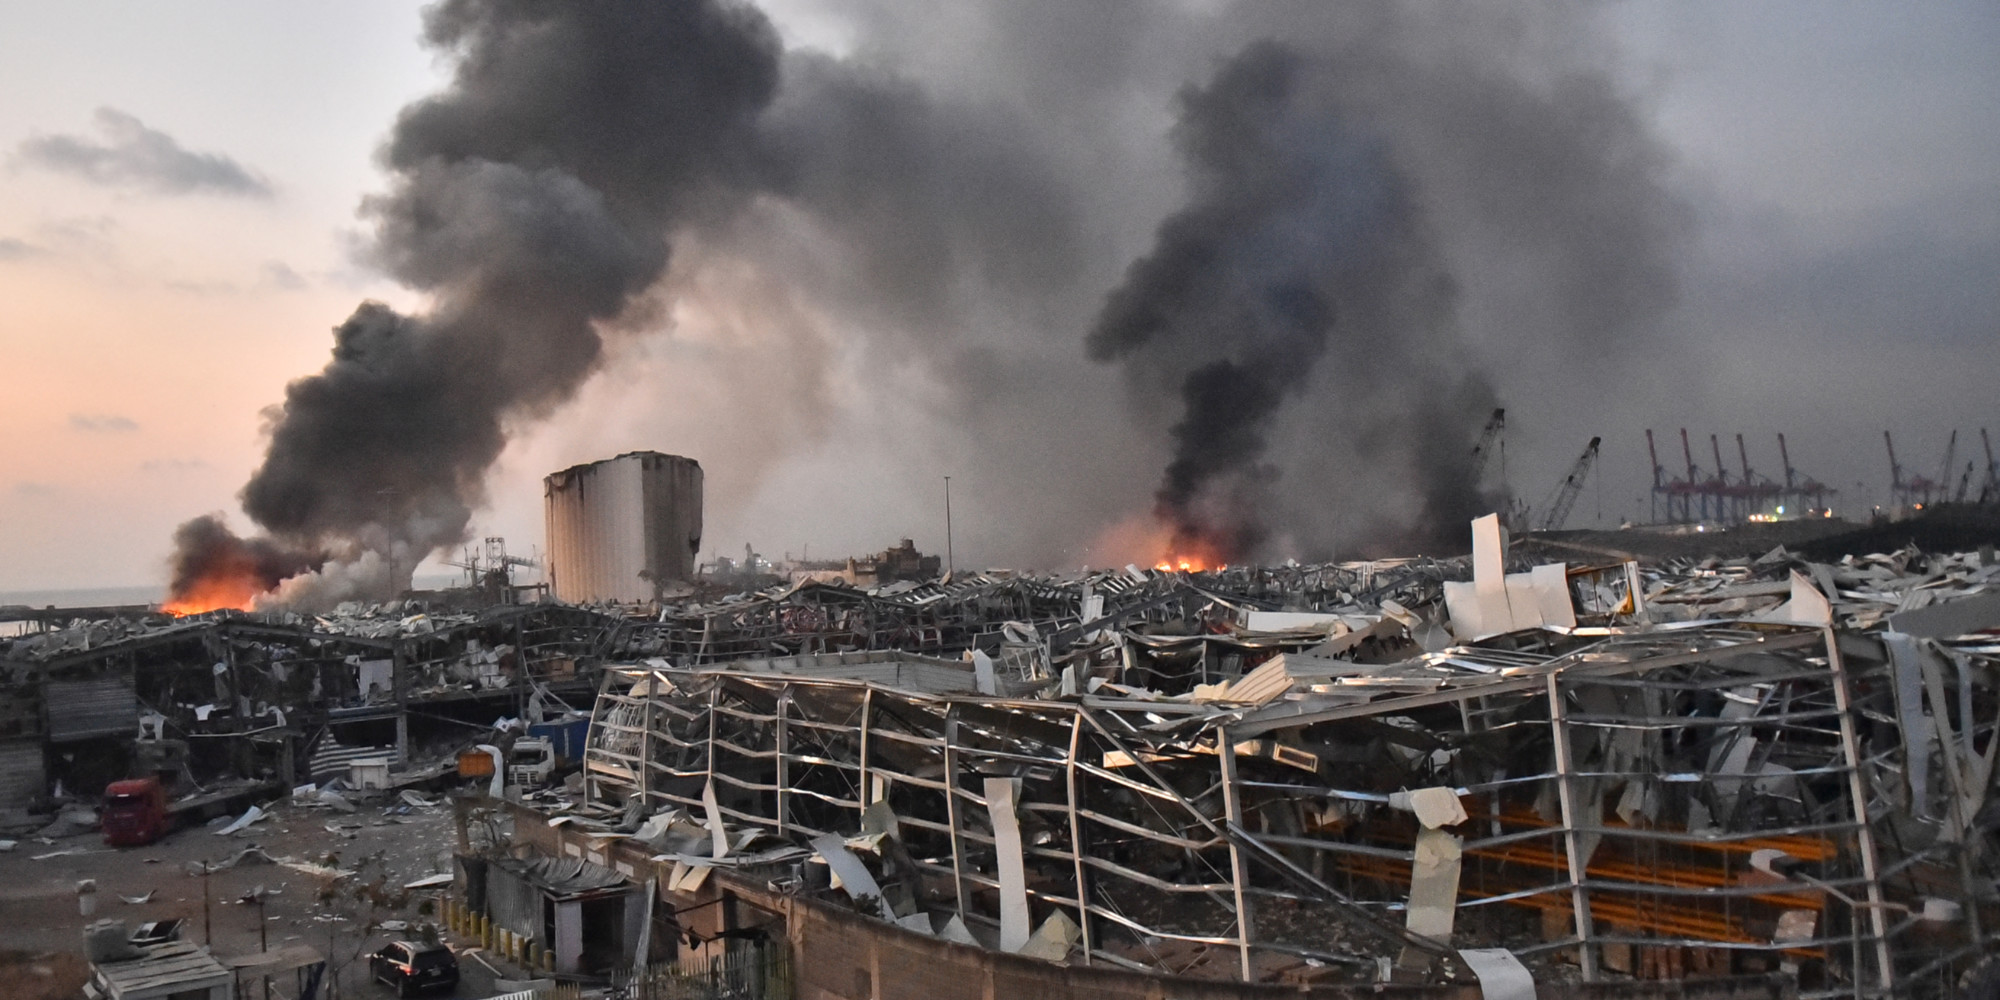 Explosion au port de Beyrouth : Reprise de l’enquête avec l’inculpation du procureur général